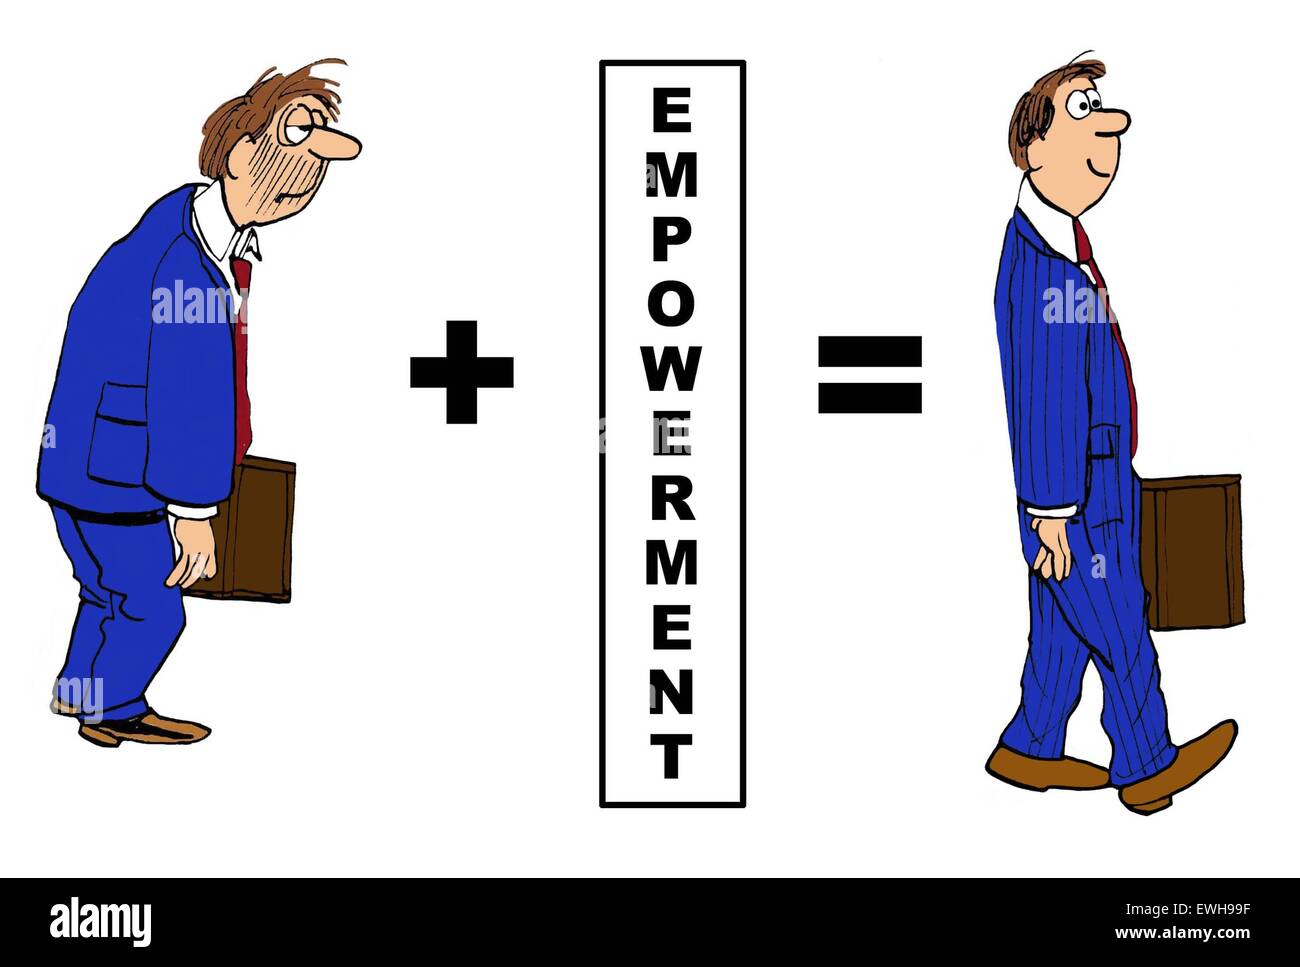 Business-Cartoon zeigt die positive Auswirkungen des "Empowerment" auf den Geschäftsmann. Stockfoto